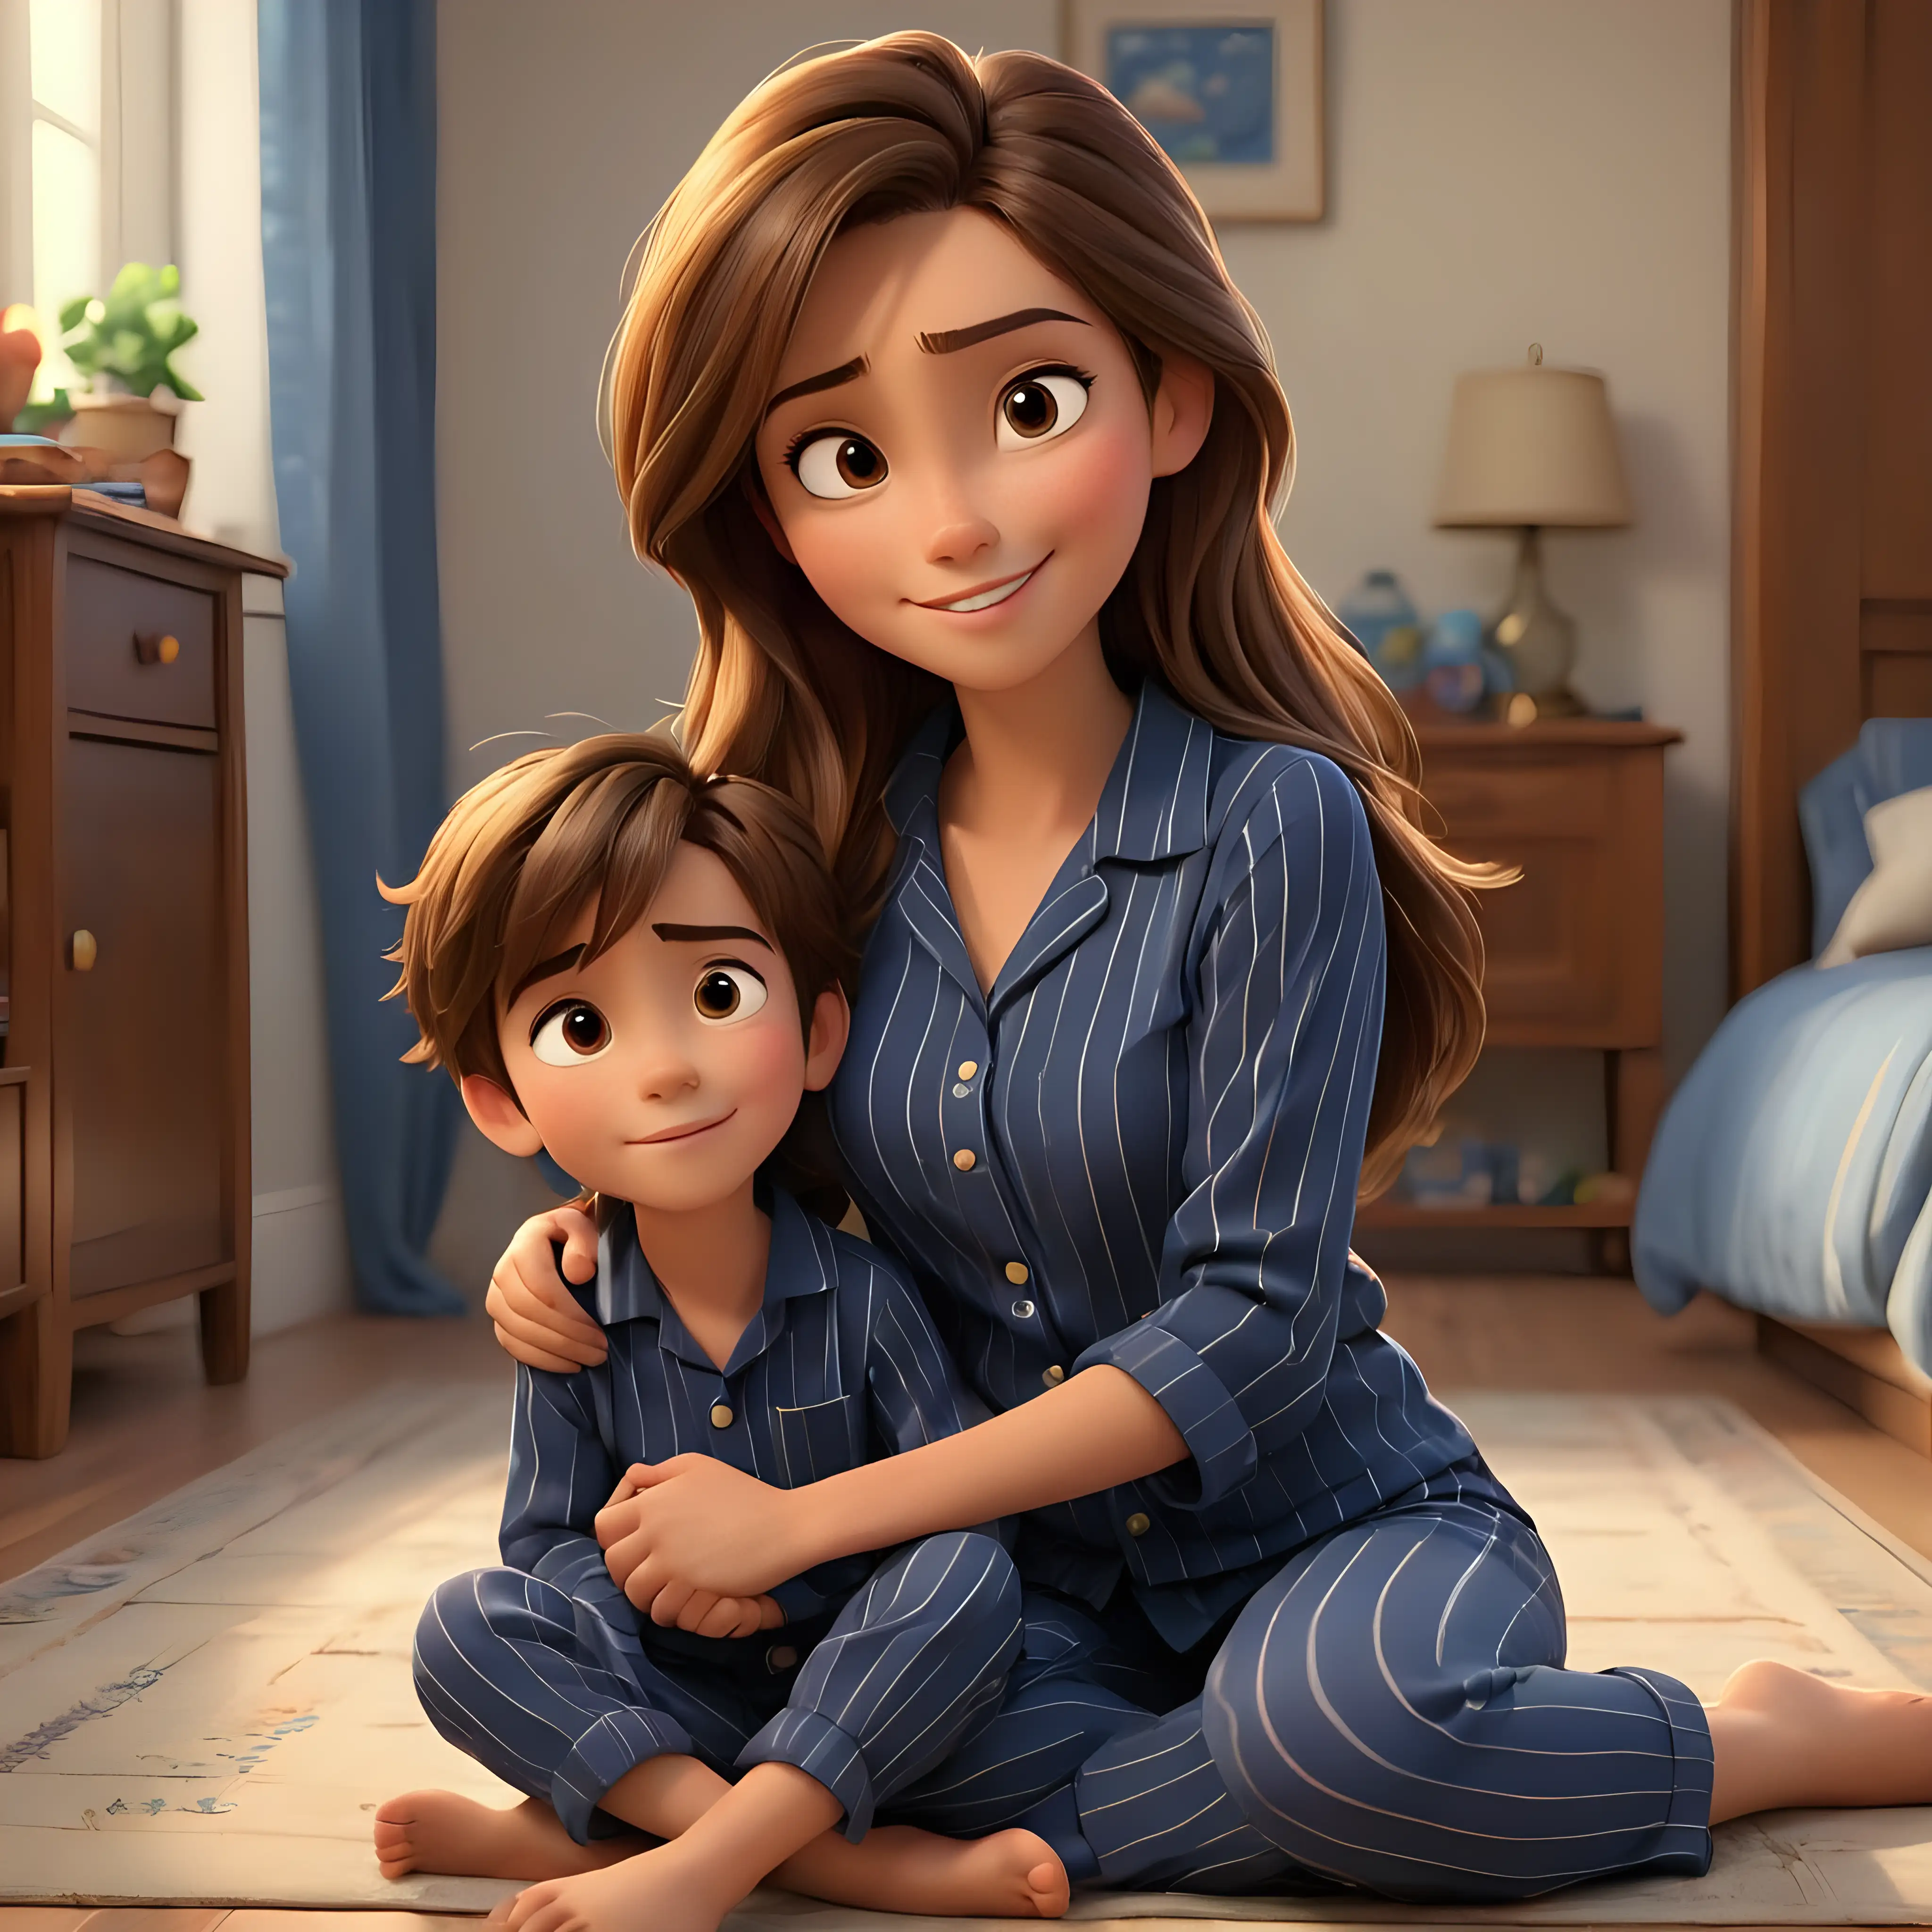 Warm Embrace Joyful Mother and Son in Disney Pixar Inspired Scene